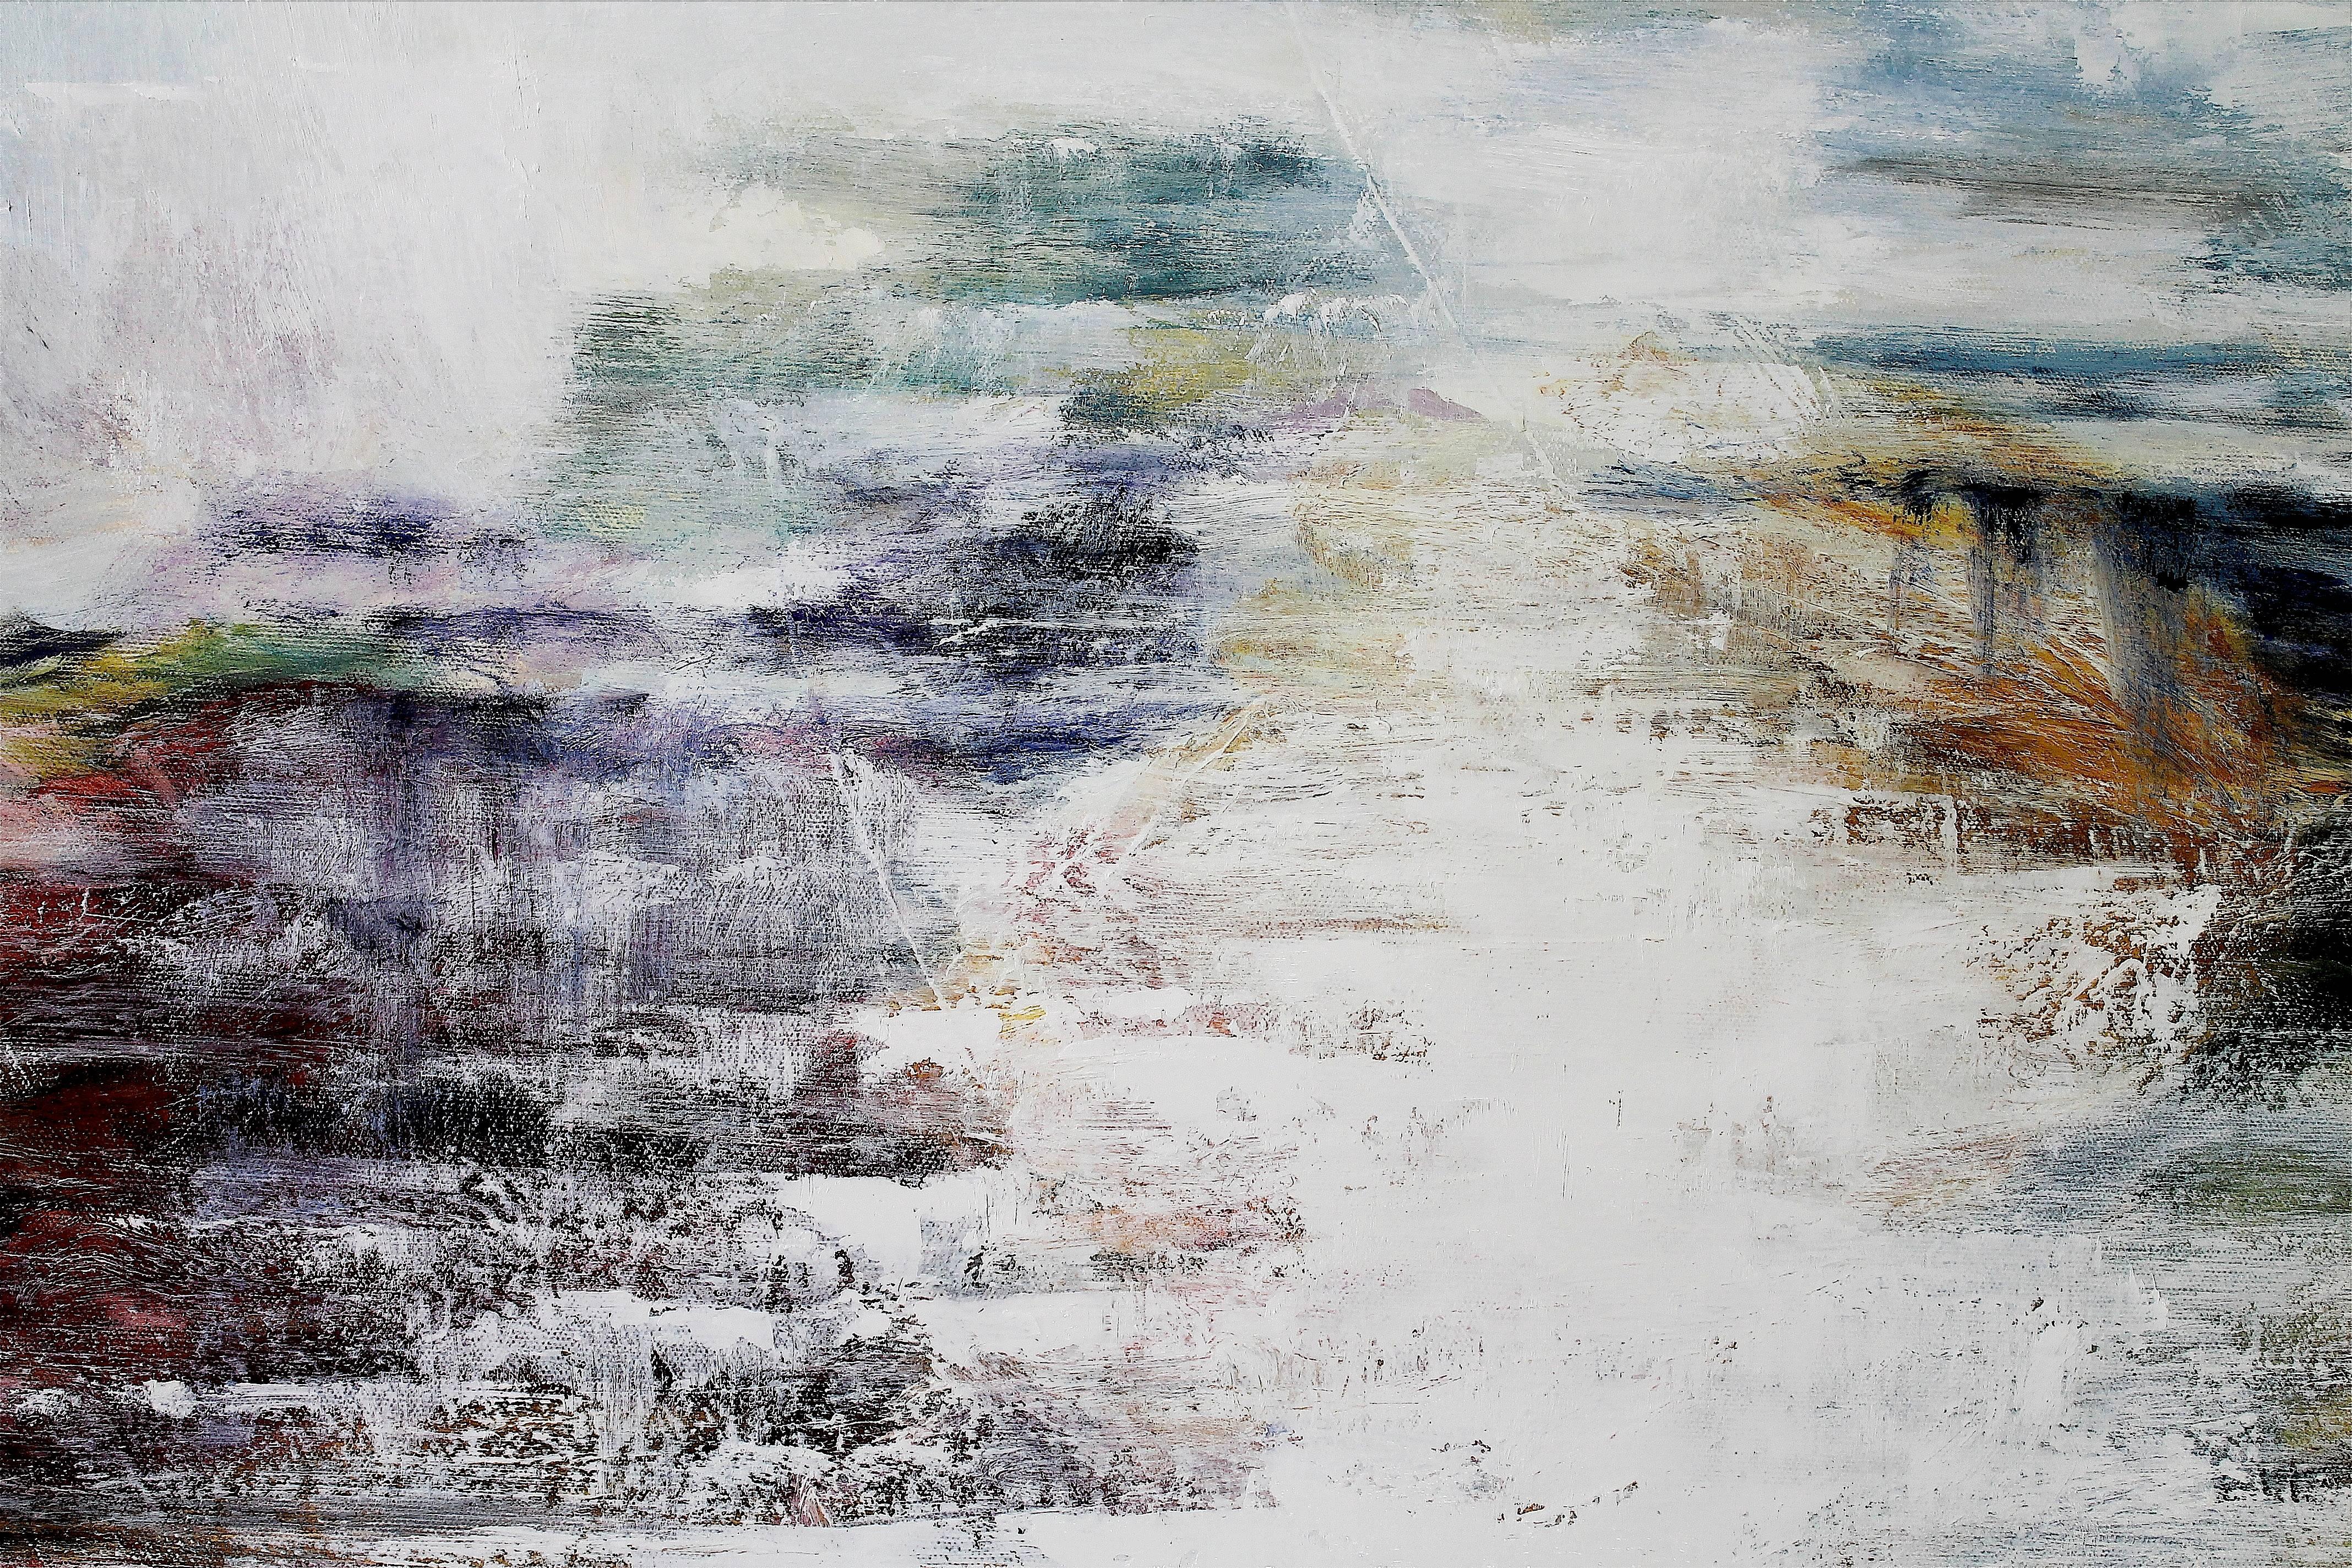 Mirrored Lake VIII - Gray Abstract Painting by Naoko Paluszak